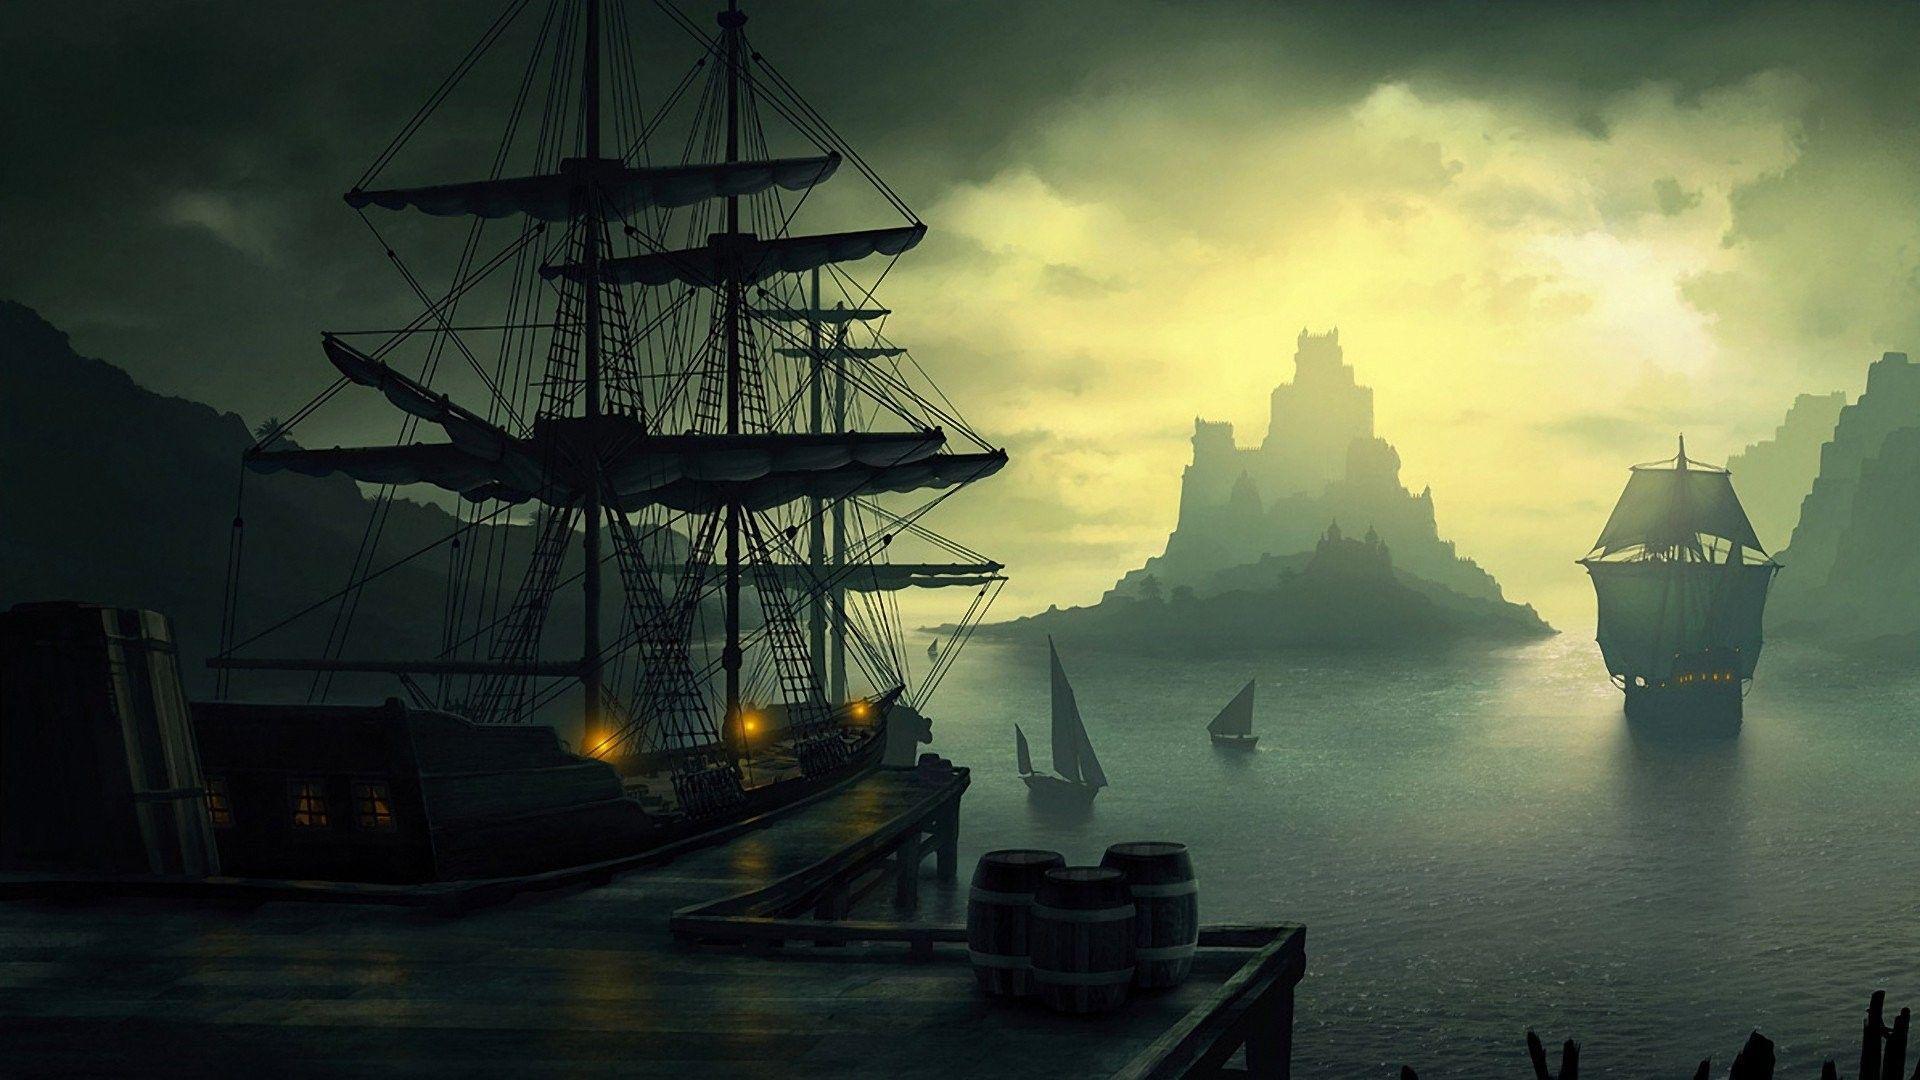 old ship, Ship, Barrels, Clouds, Sailing, Lantern, Sun, Island